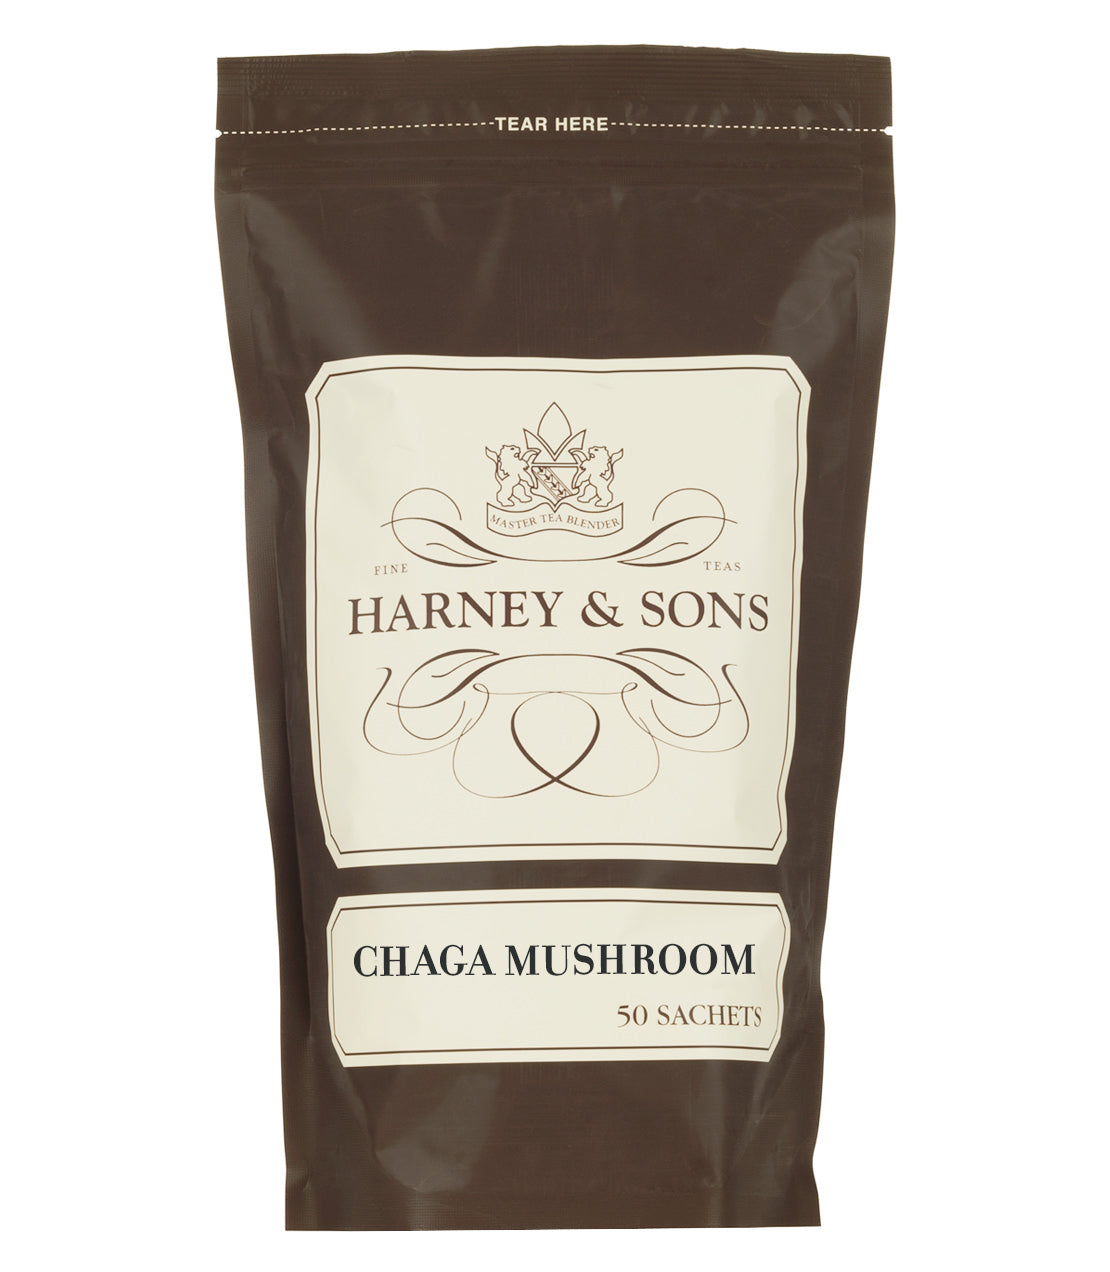 Chaga Mushroom, Bag of 50 Sachets - Sachets Bag of 50 Sachets - Harney & Sons Fine Teas